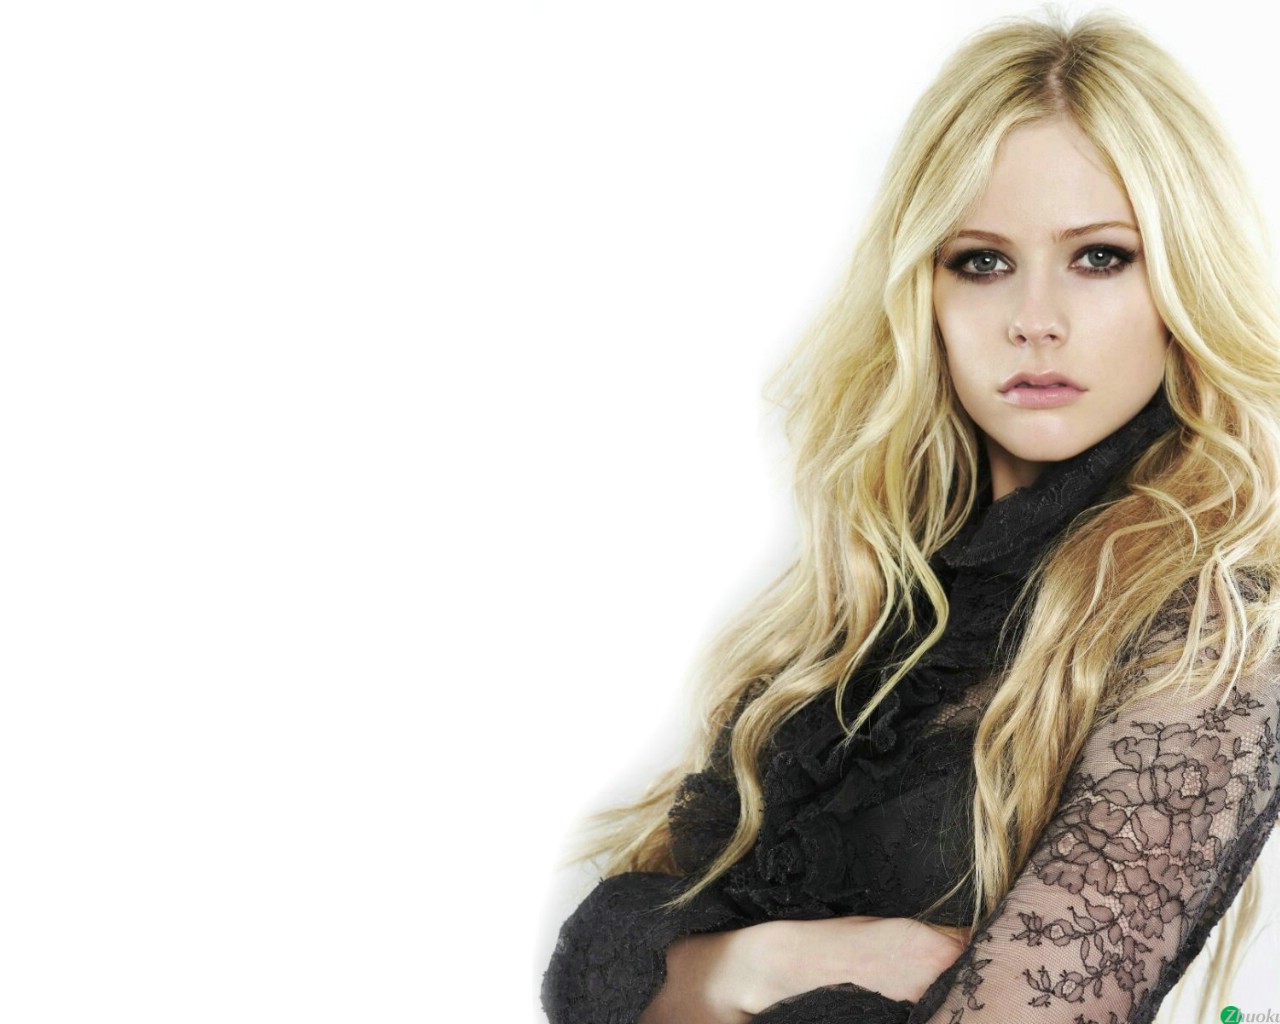 壁纸1280x1024艾薇儿 Avril Lavigne 壁纸2壁纸 艾薇儿 Avril Lavigne壁纸 艾薇儿 Avril Lavigne图片 艾薇儿 Avril Lavigne素材 明星壁纸 明星图库 明星图片素材桌面壁纸